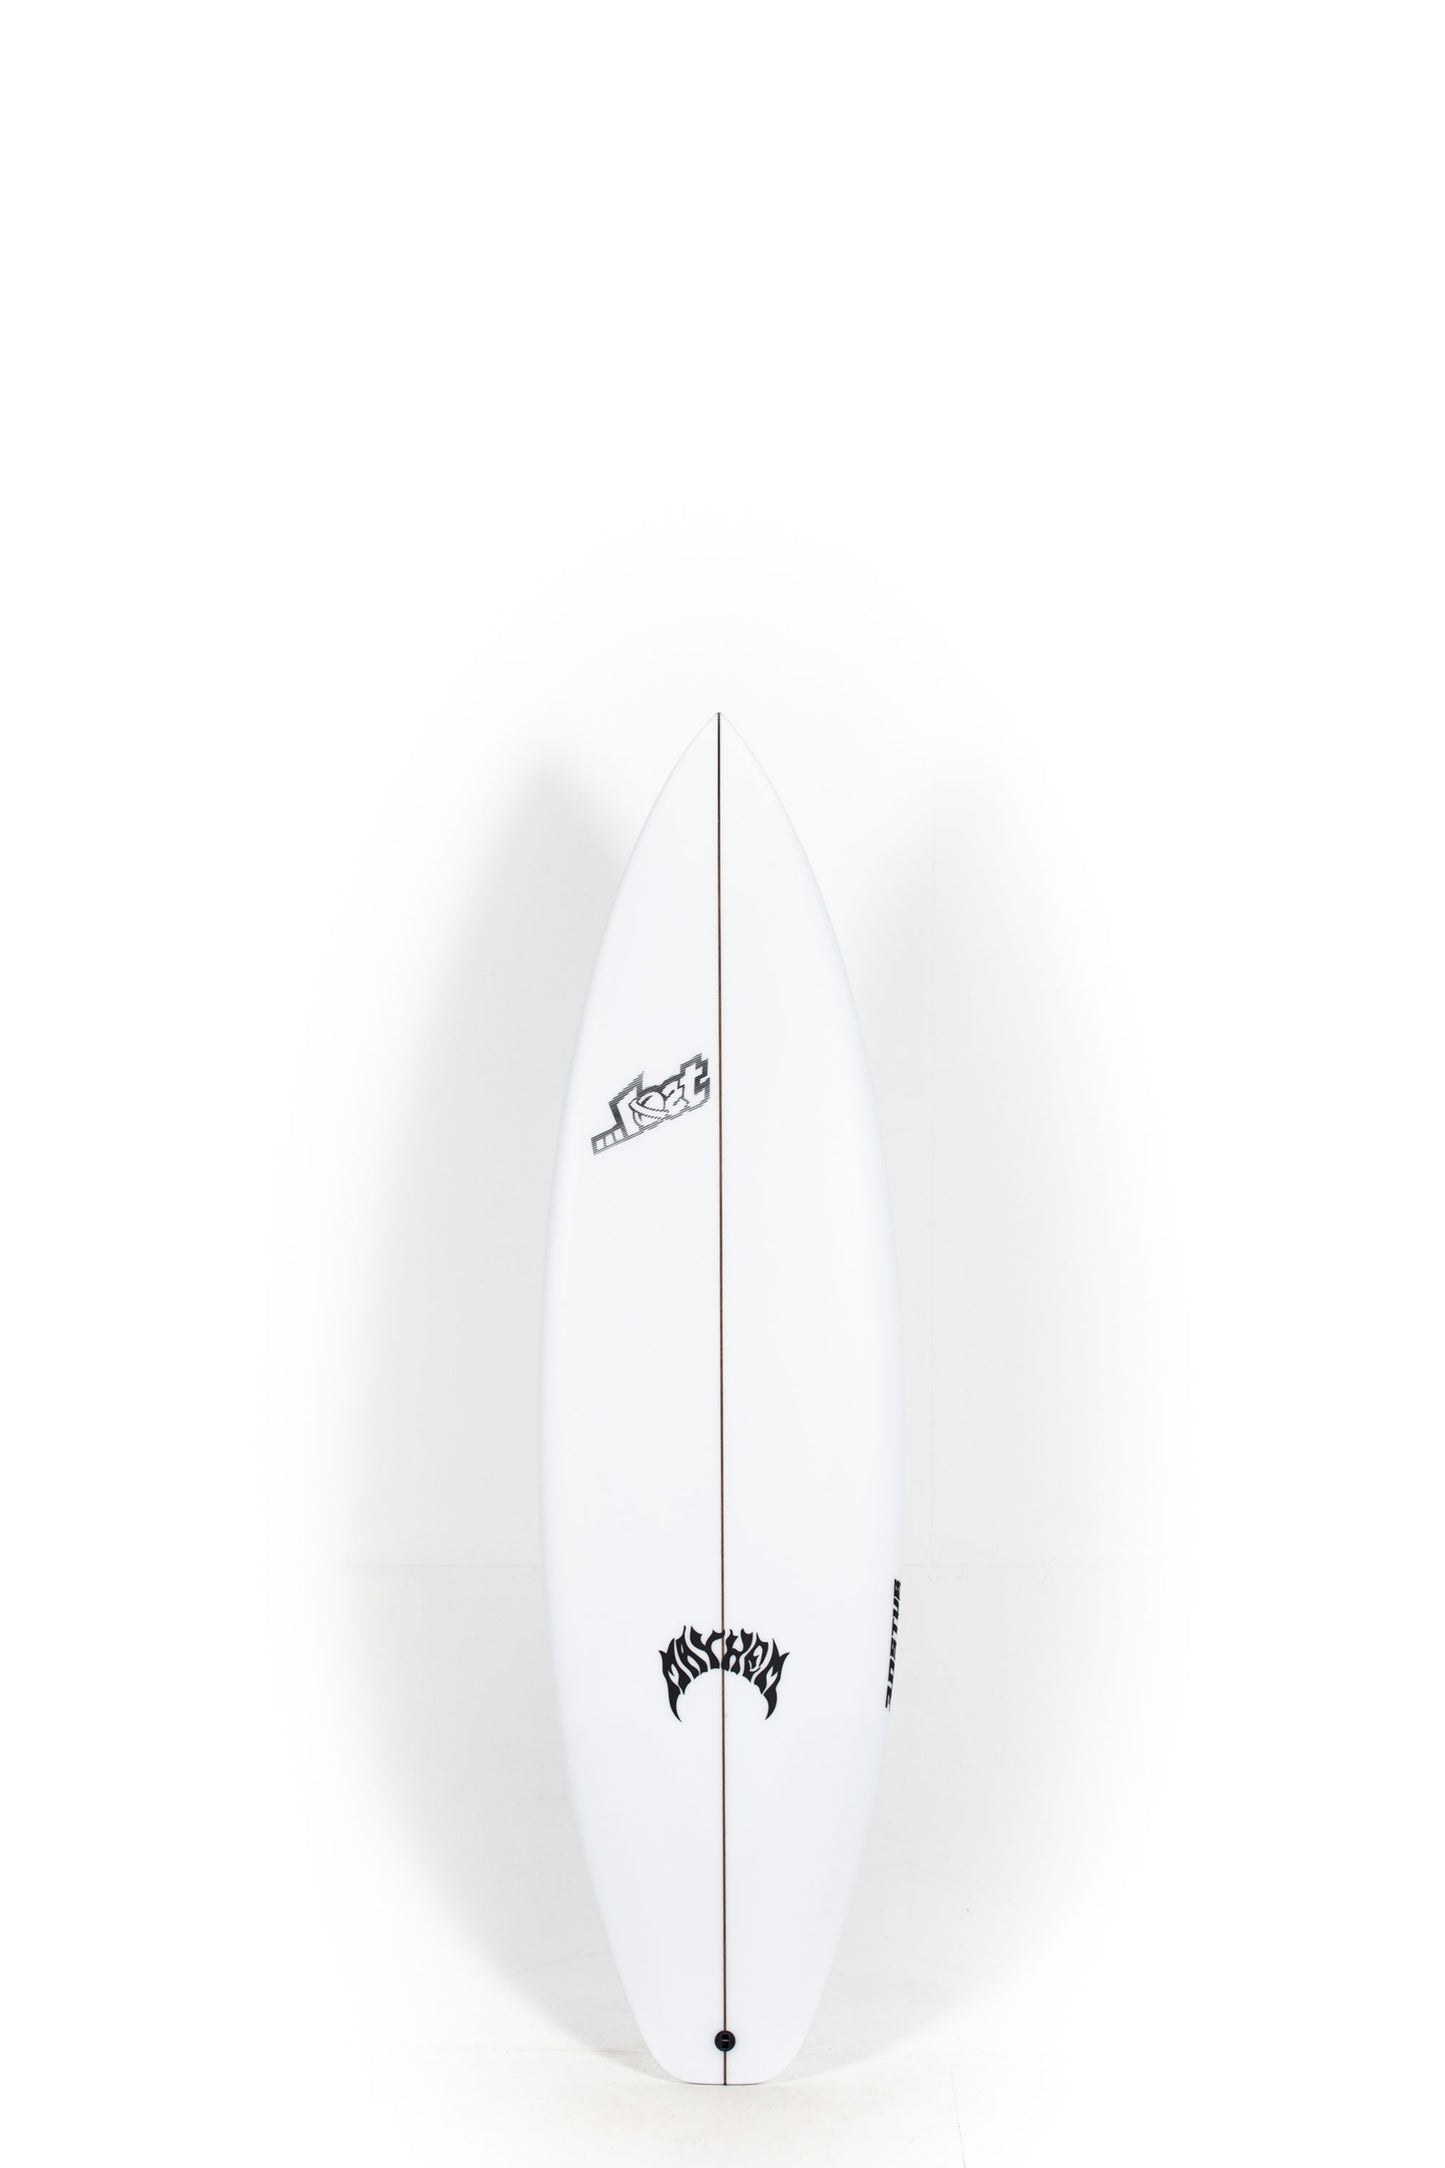 Pukas Surf Shop - Lost Surfboard - 3.0_STUB by Matt Biolos - 5’11” x 19.38" x 2.45" - 29.5L